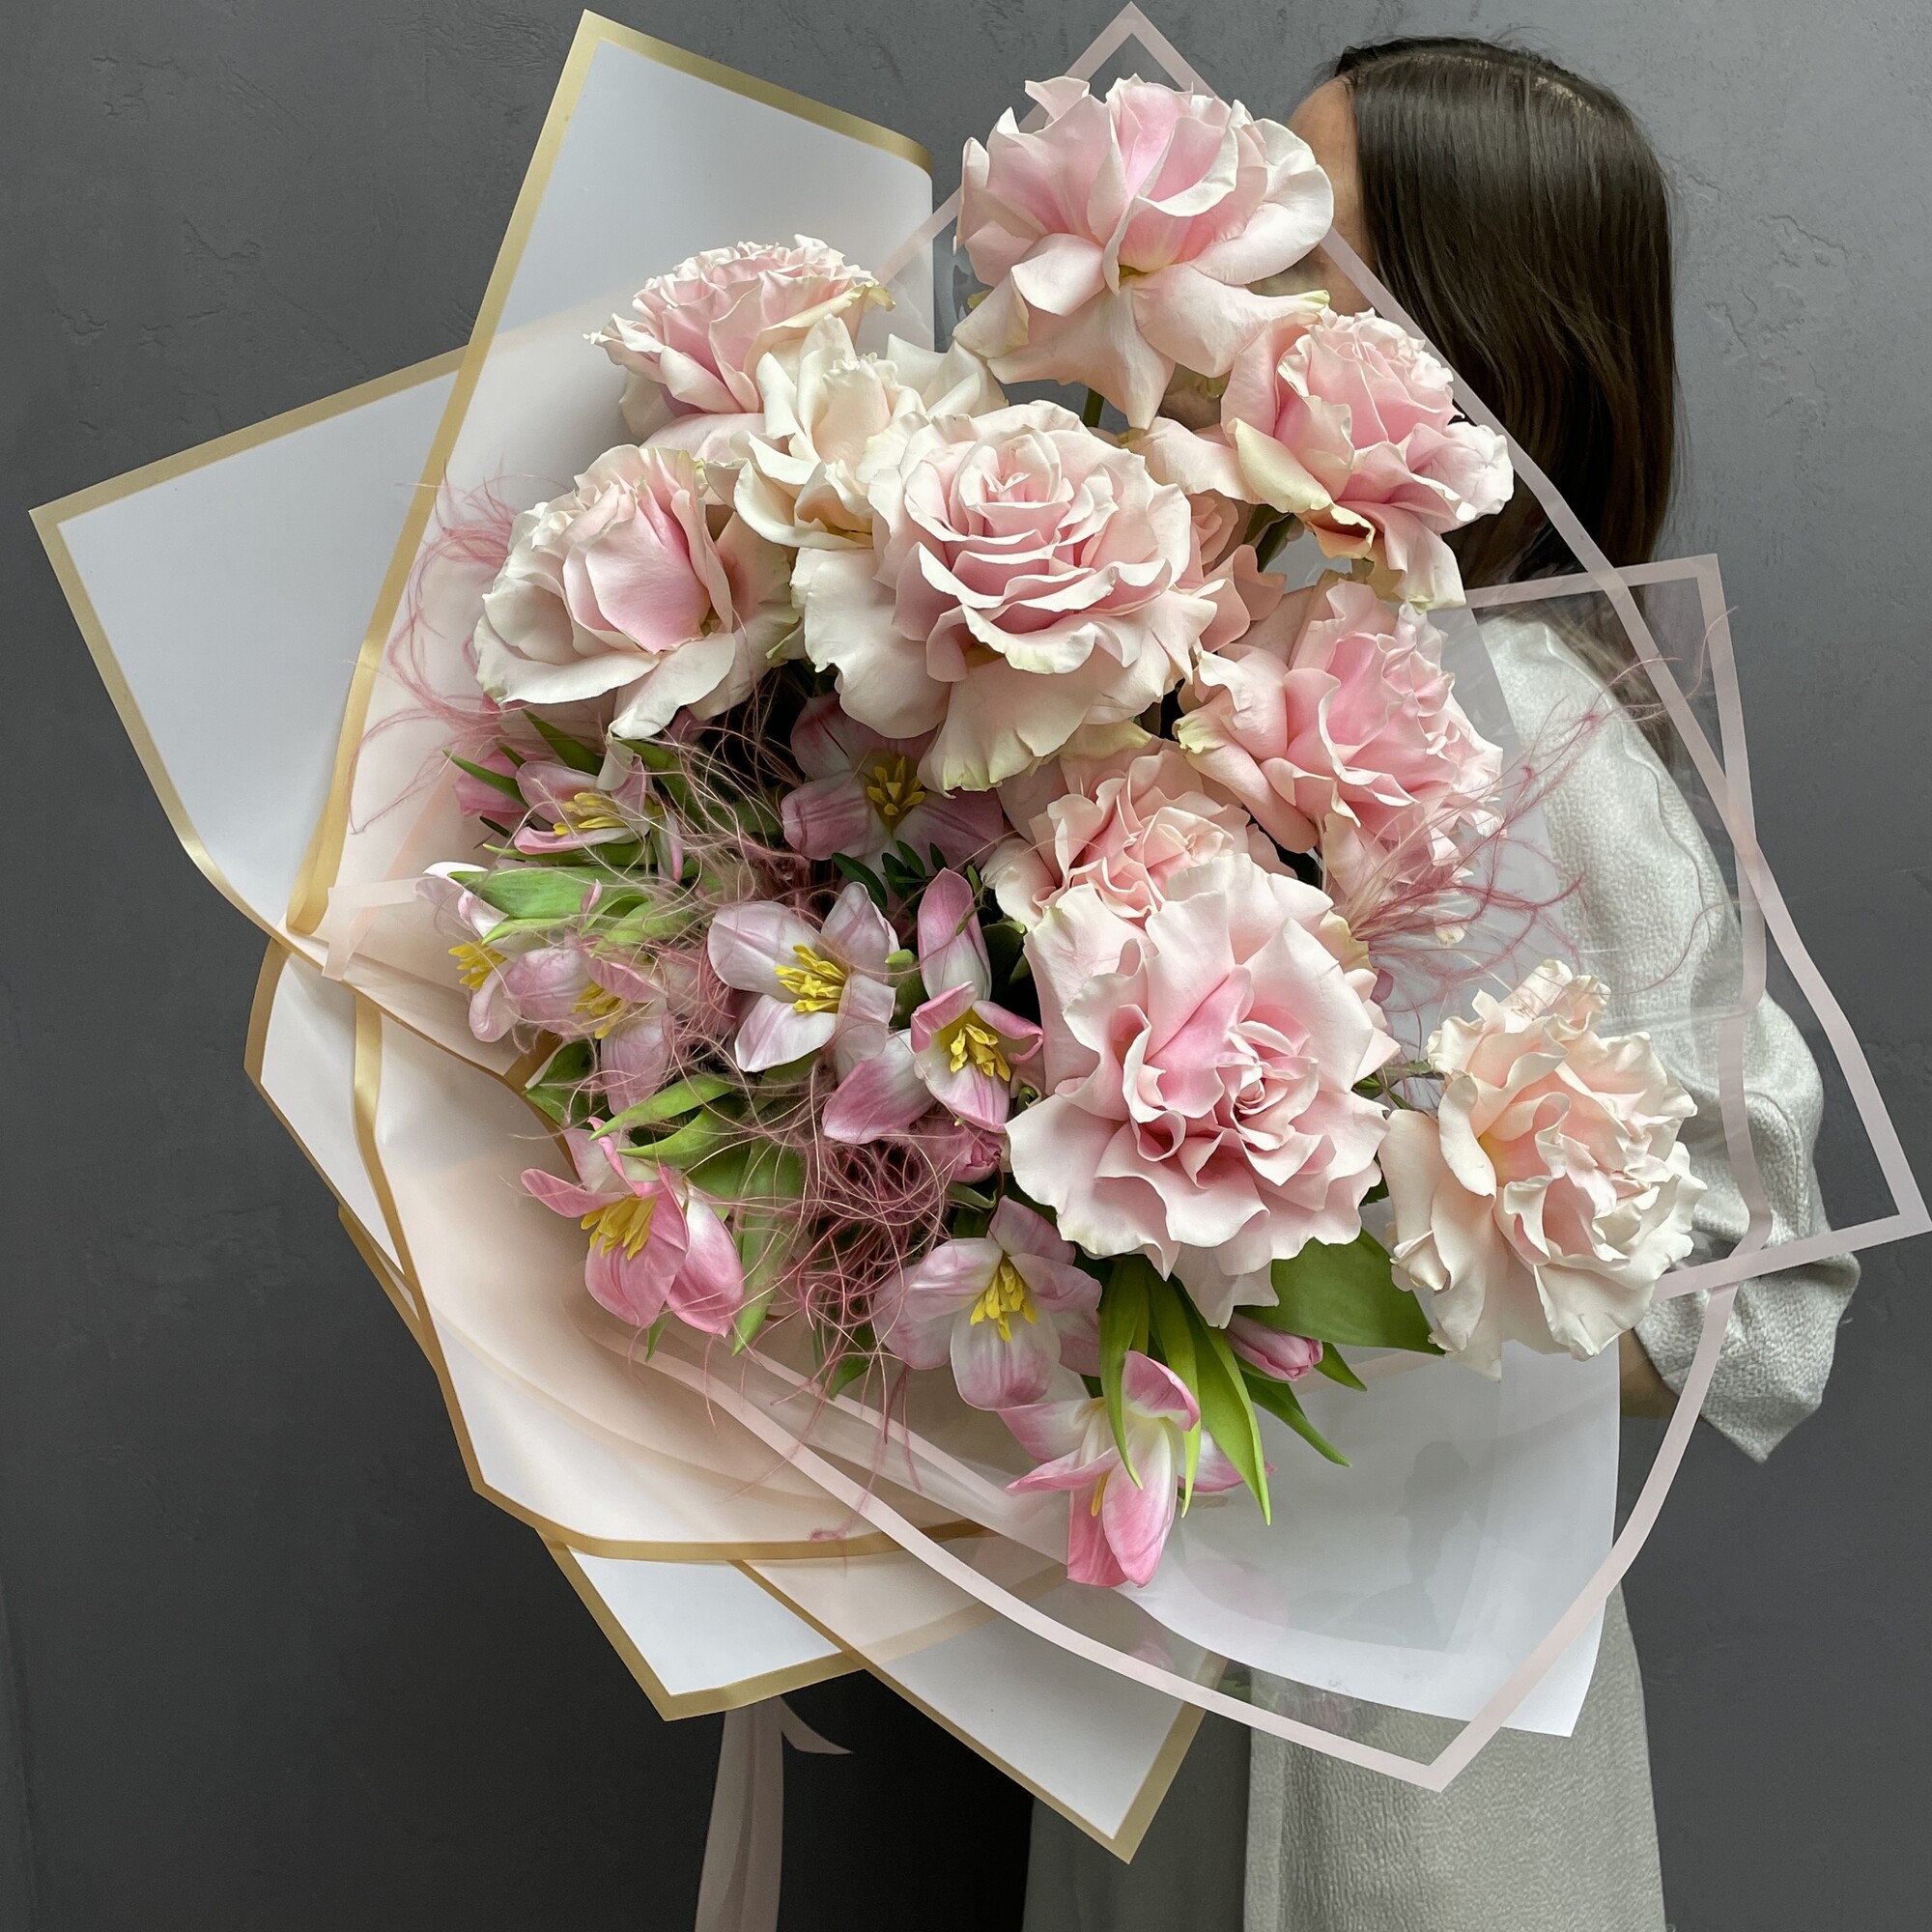 Романтичный авторский букет в нежных тонах из свежих тюльпанов и французких роз "ПАРИ ДРИМ"